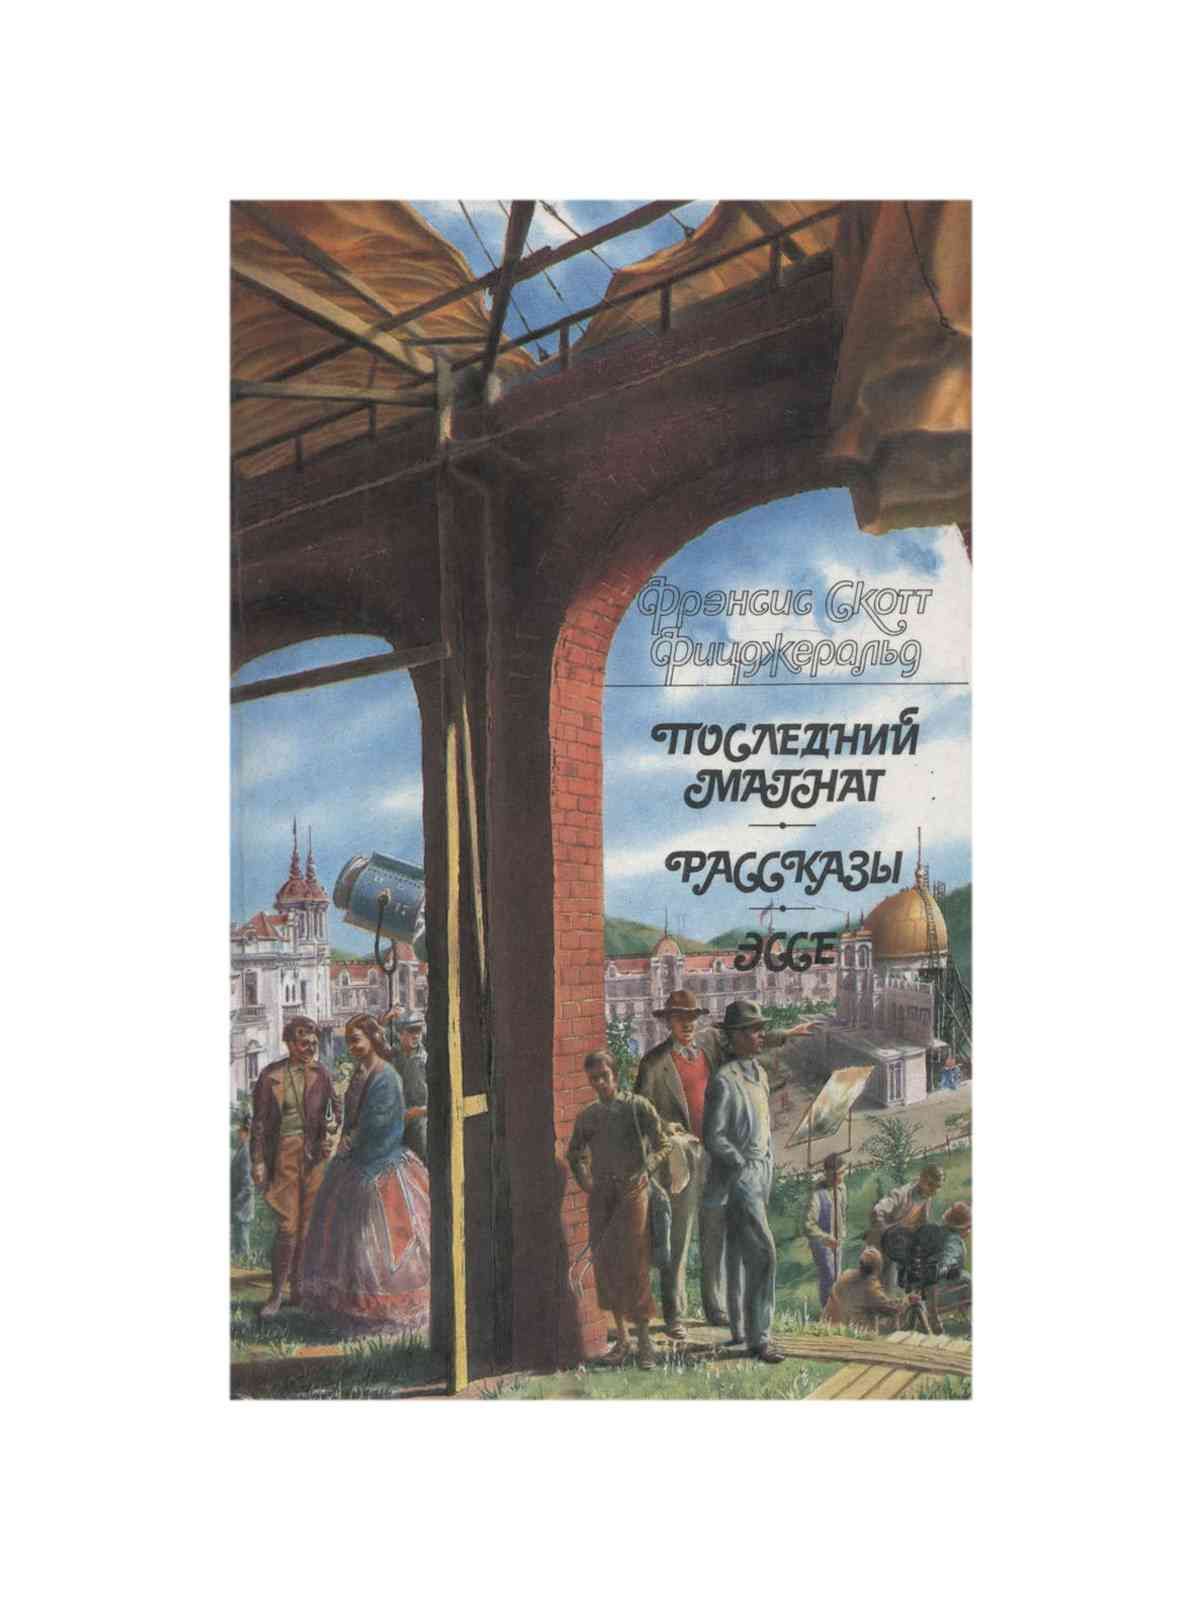 Тайный сын книга. Последний Магнат 1974 г. Аудиокнига Магнат. ISBN 5-253-00157-3.